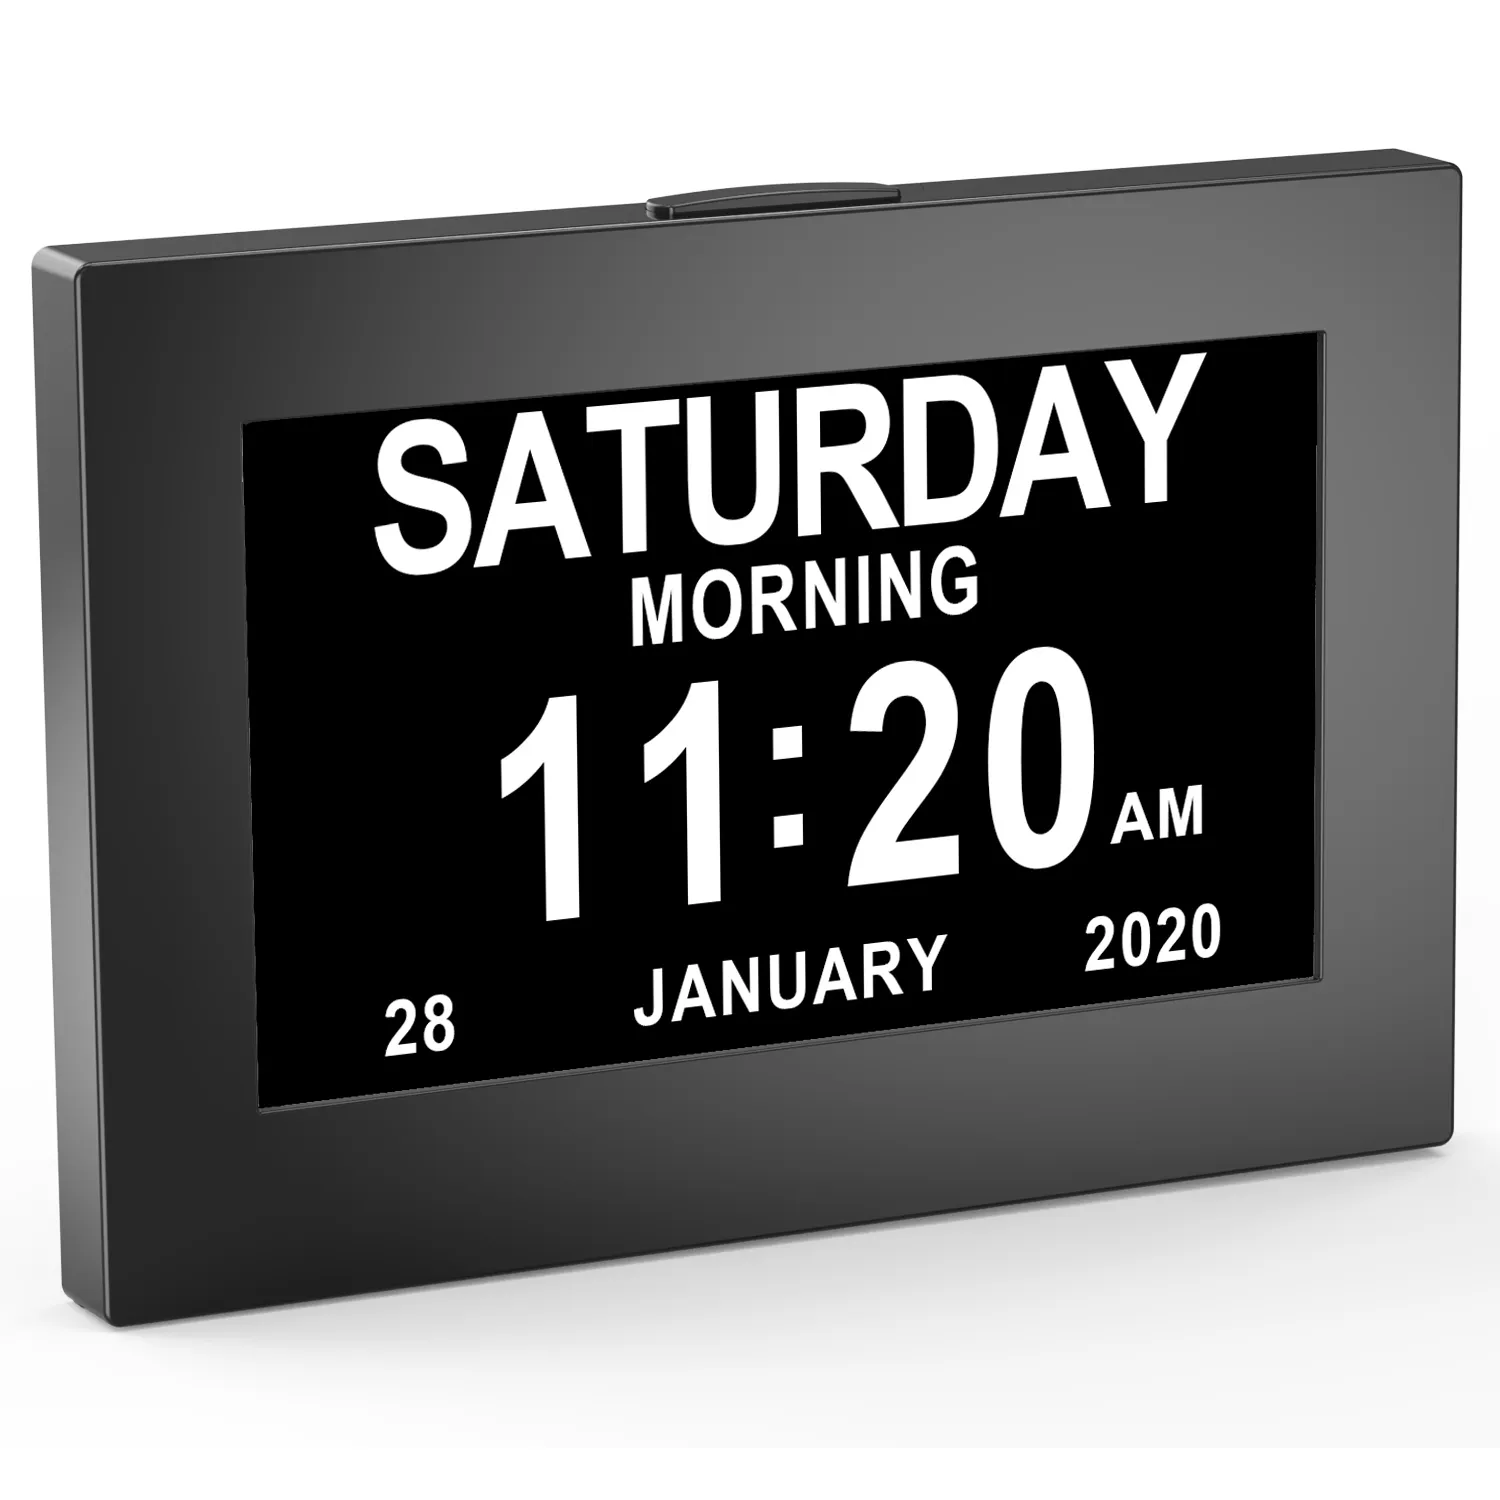 Horloge de la démence 8 "Alzheimer Horloge de bureau avec déficience Horloge de chambre avec jour Date mois année, horloge murale horloge de table, horloge de démence